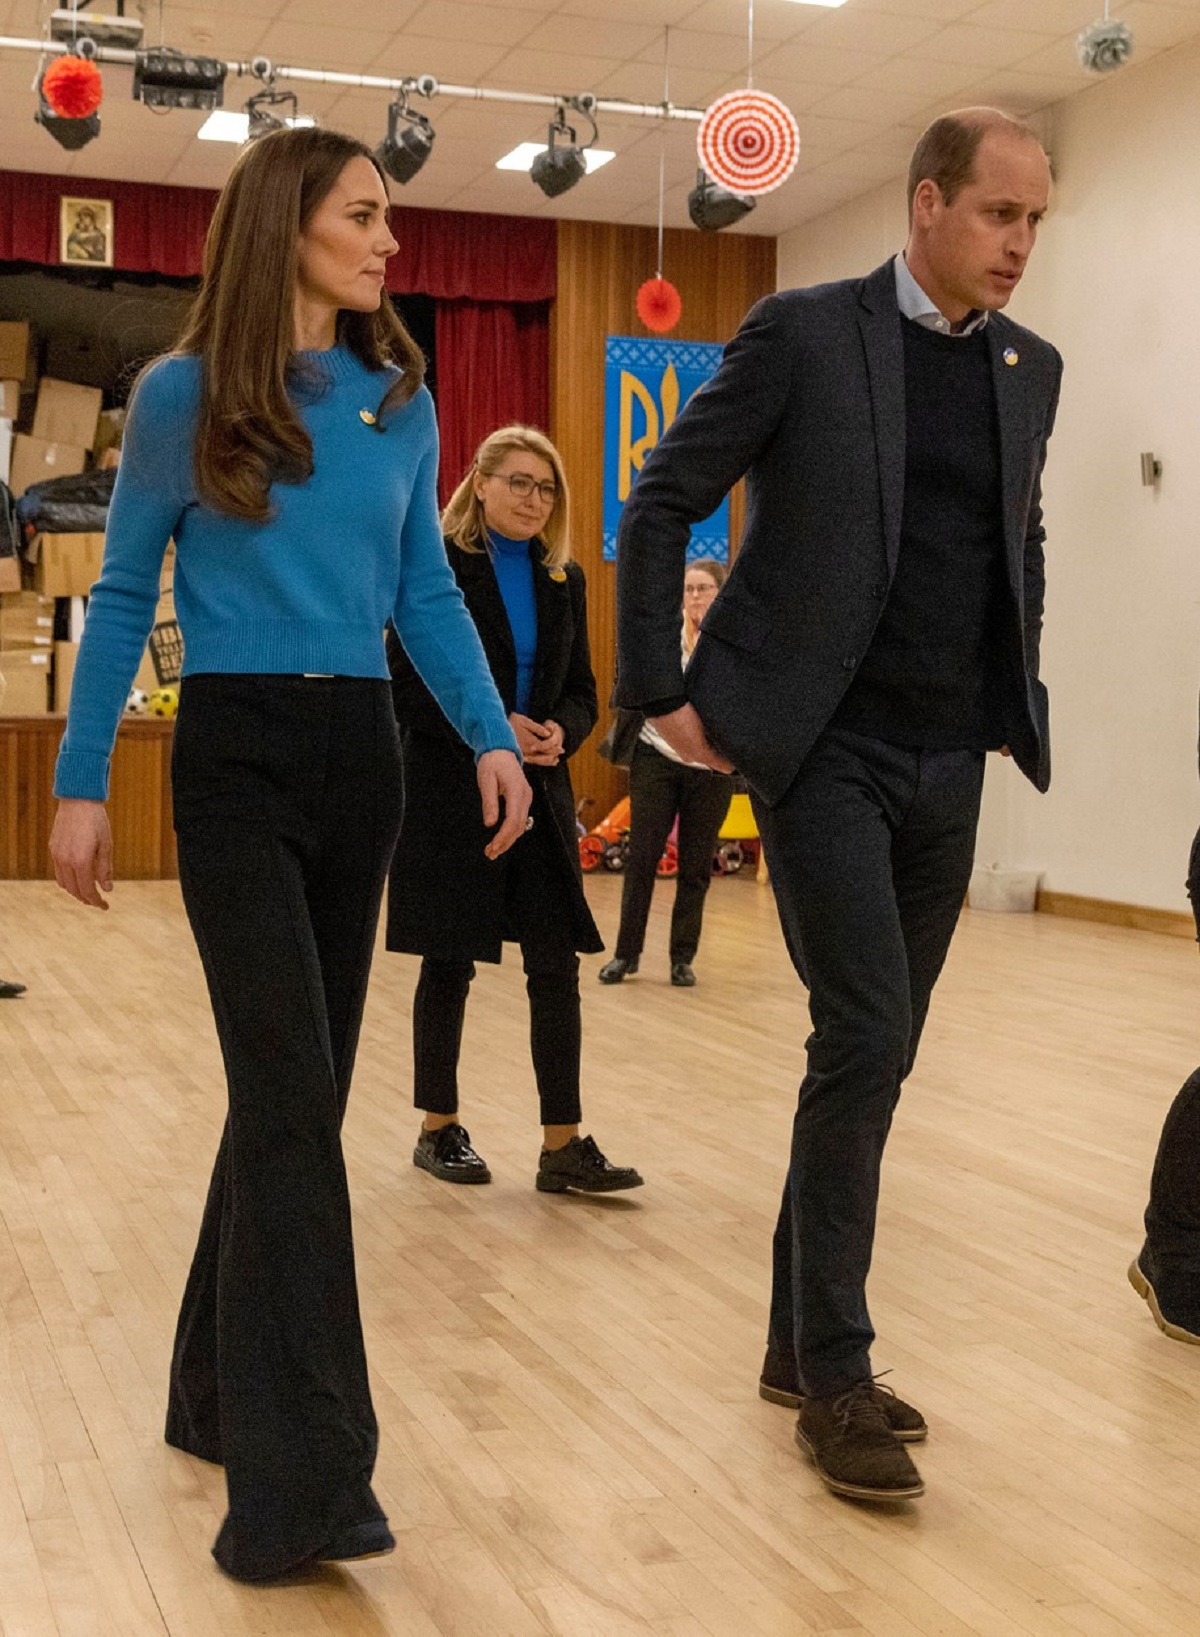 Kate Middleton într-un pulover albastru alături de Prințul William la Centrul Cultural din Londra